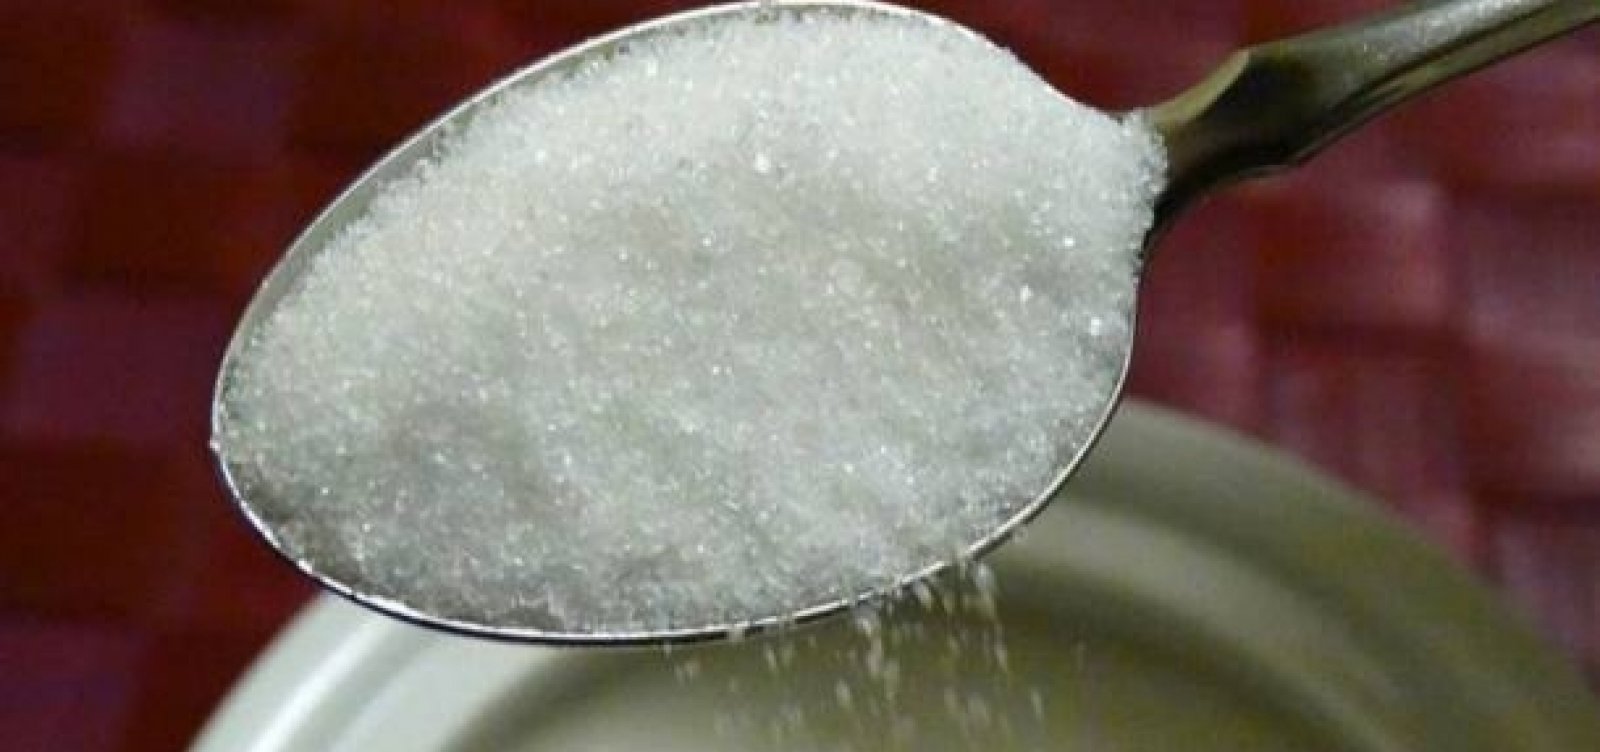 Acordo para redução de açúcar em produtos industrializados será assinado após 1º turno